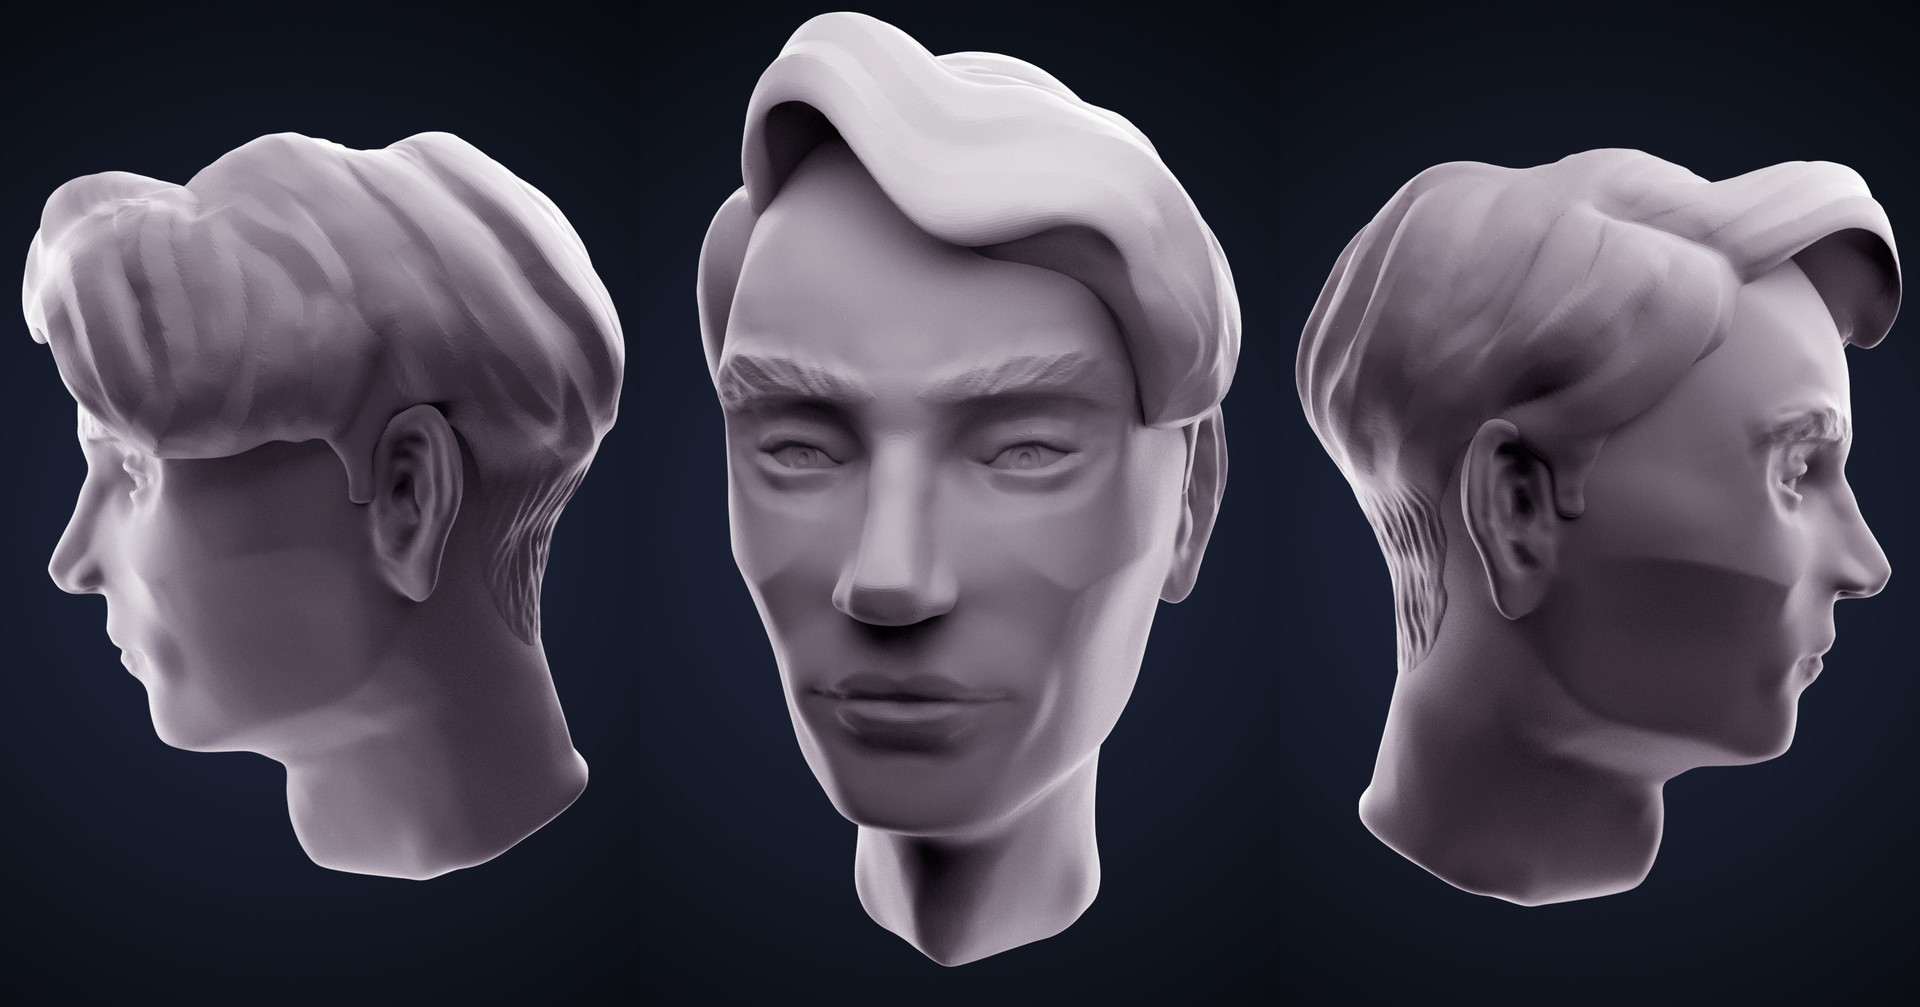 Deepthi - Sculpt#1 - Stylized Male Head